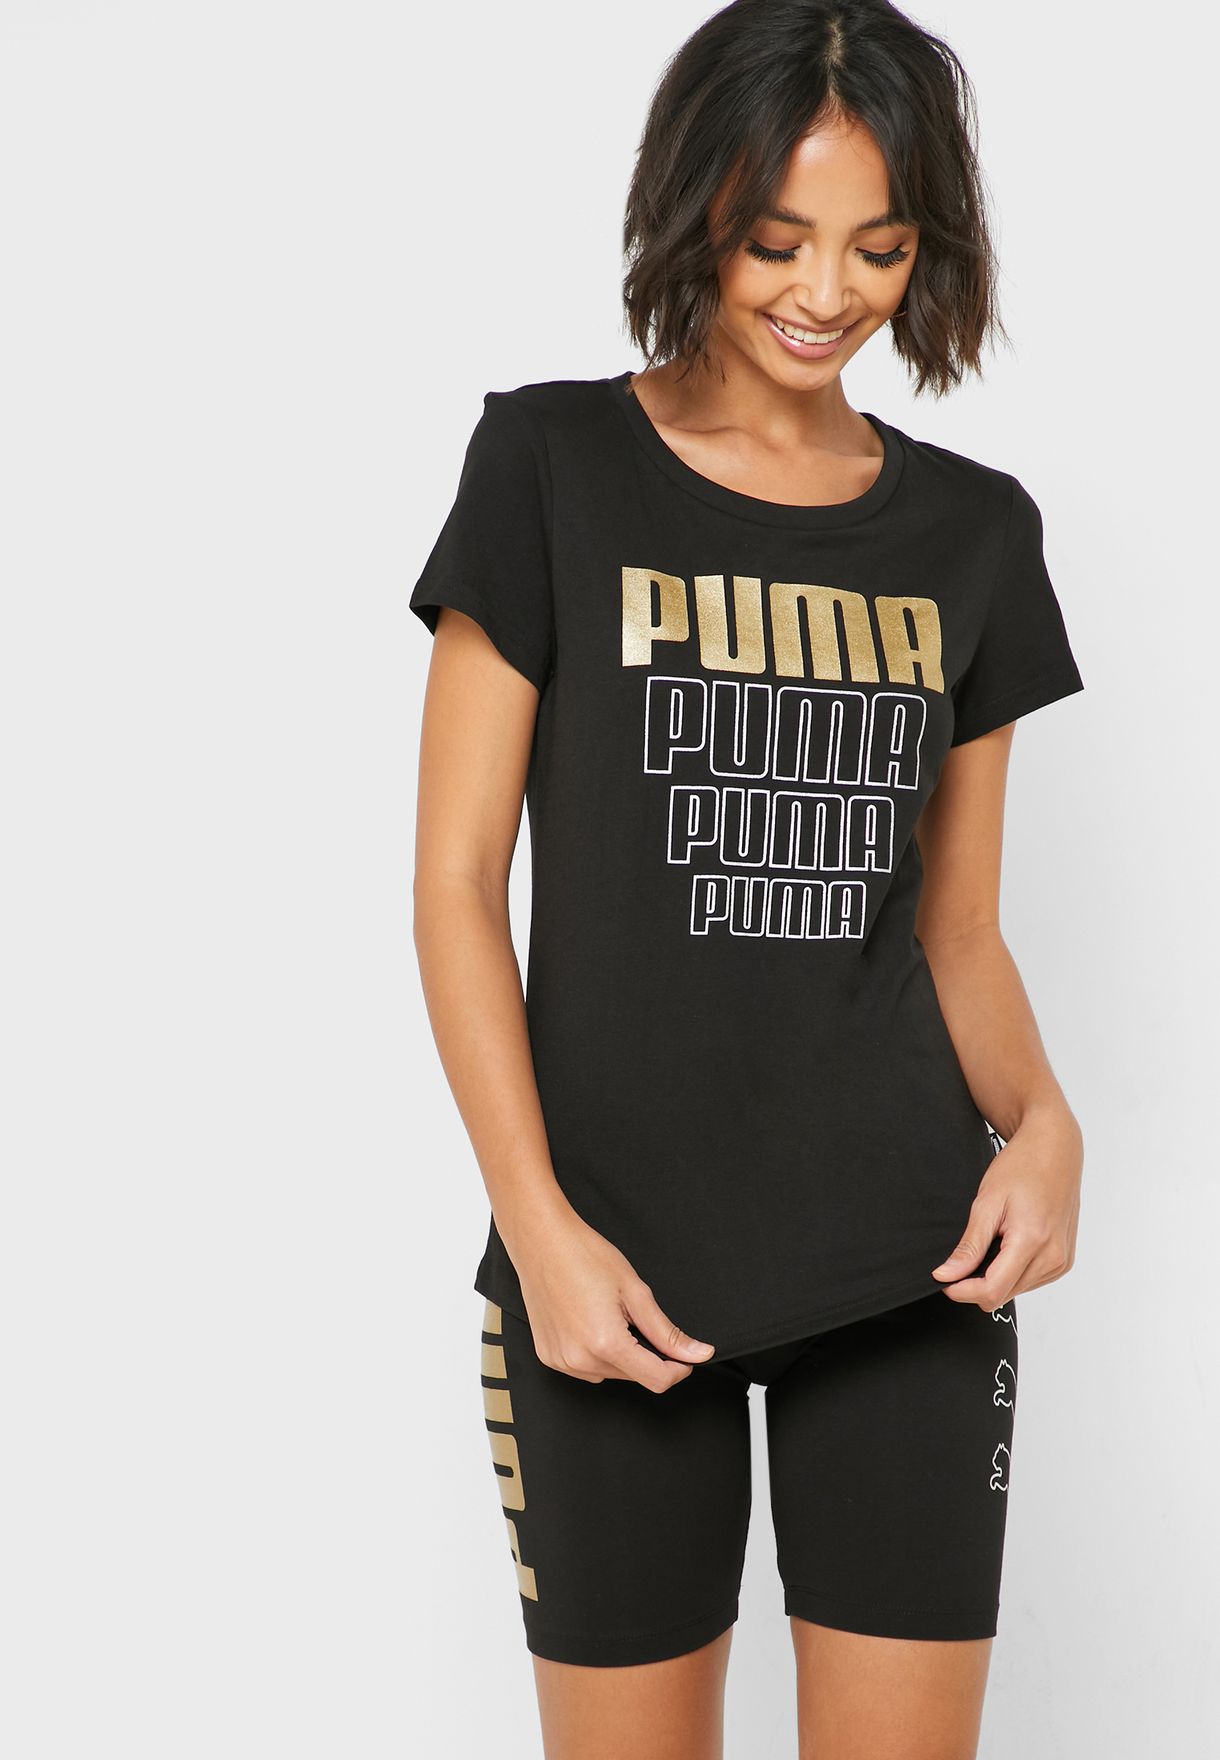 puma tshirt for women